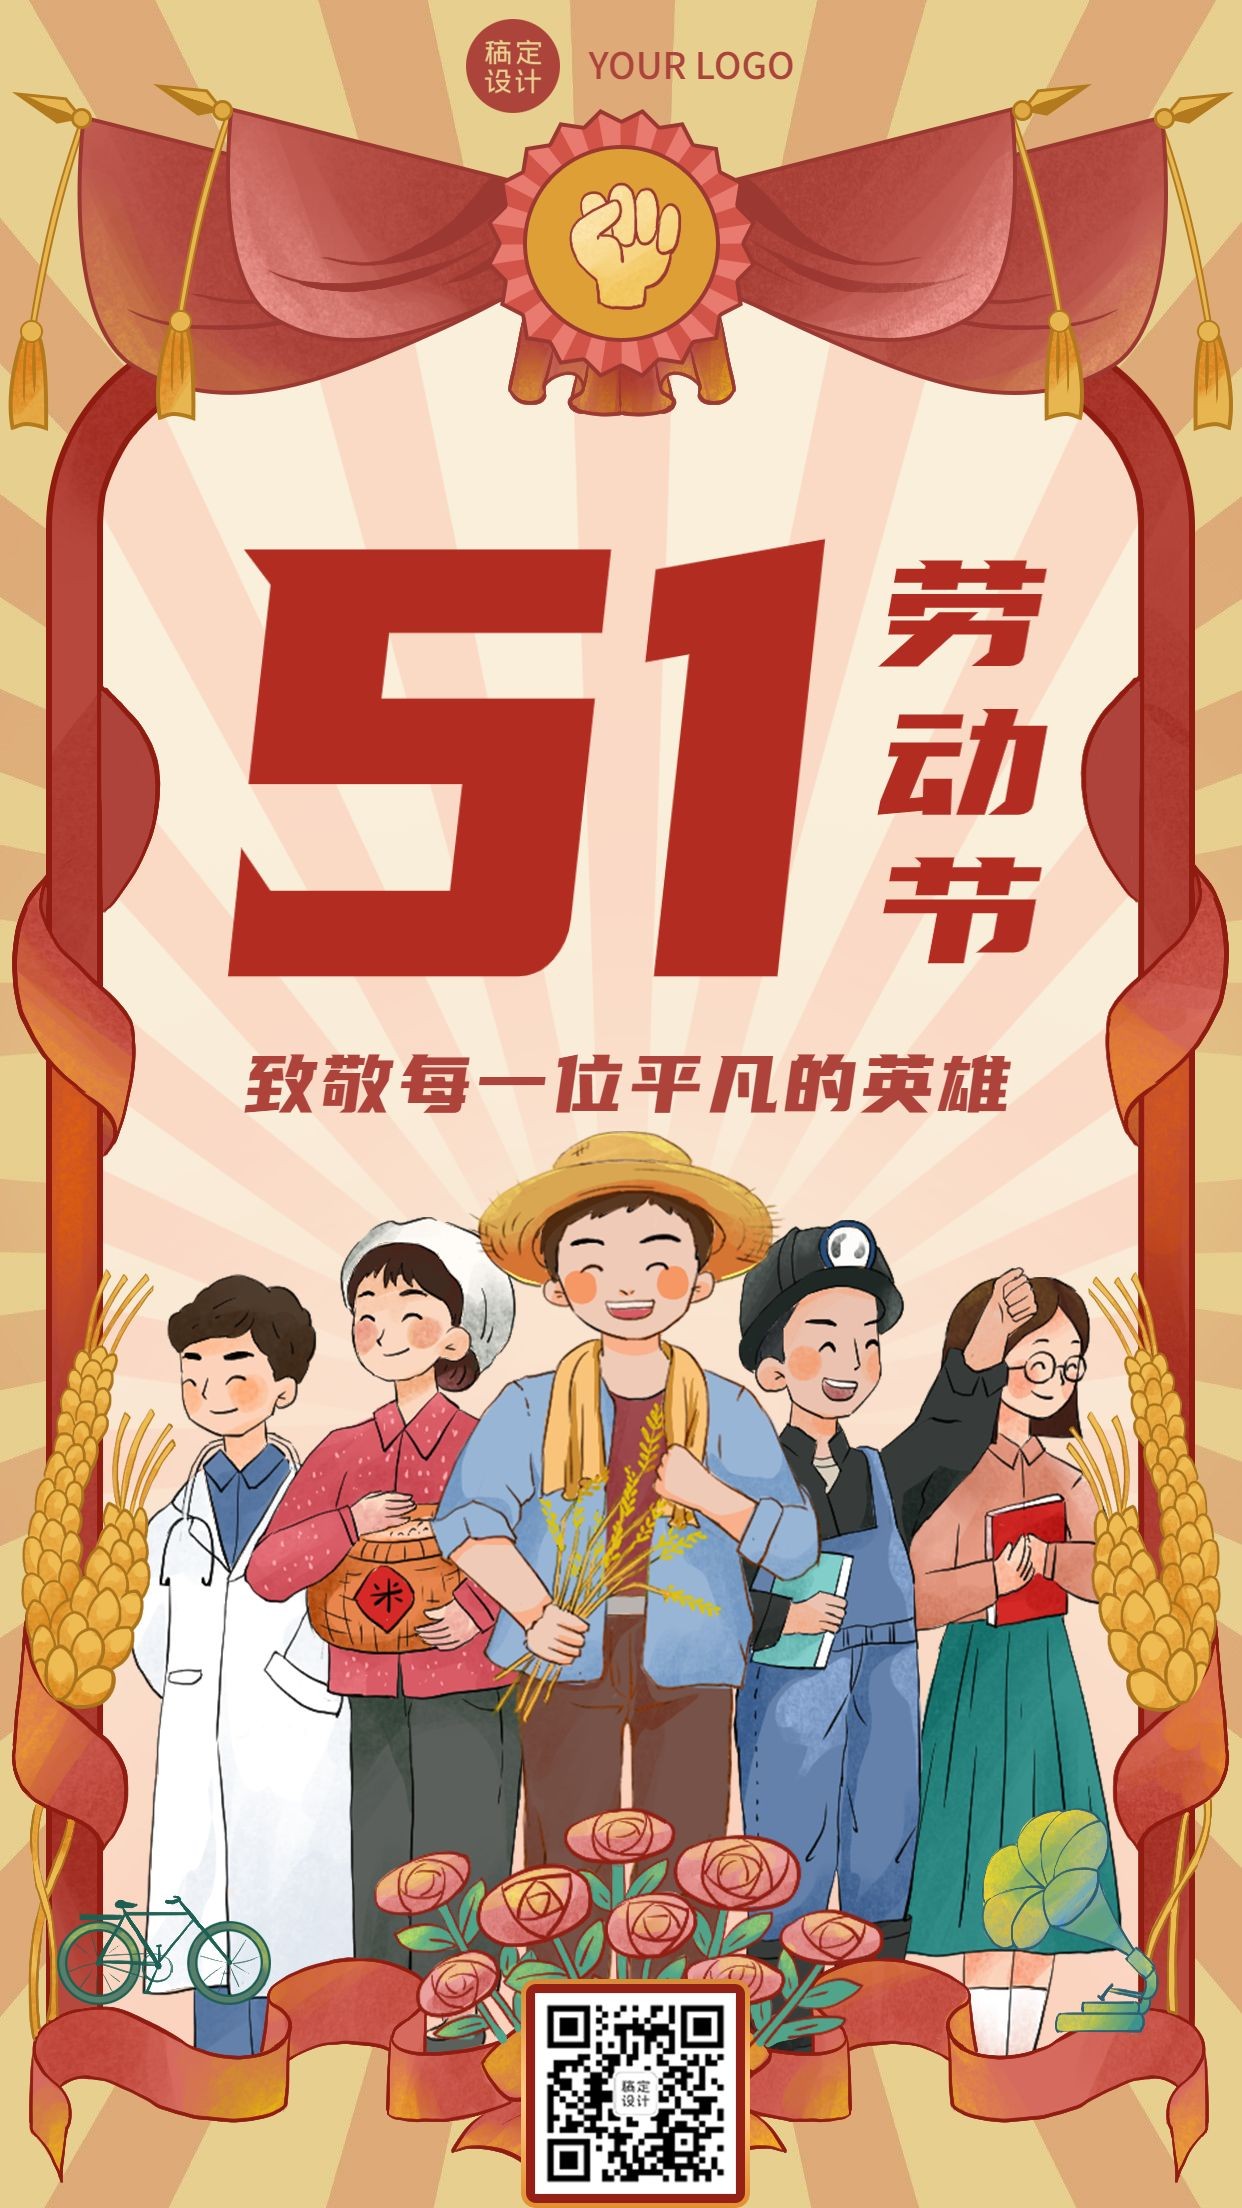 劳动节节日祝福插画手机海报